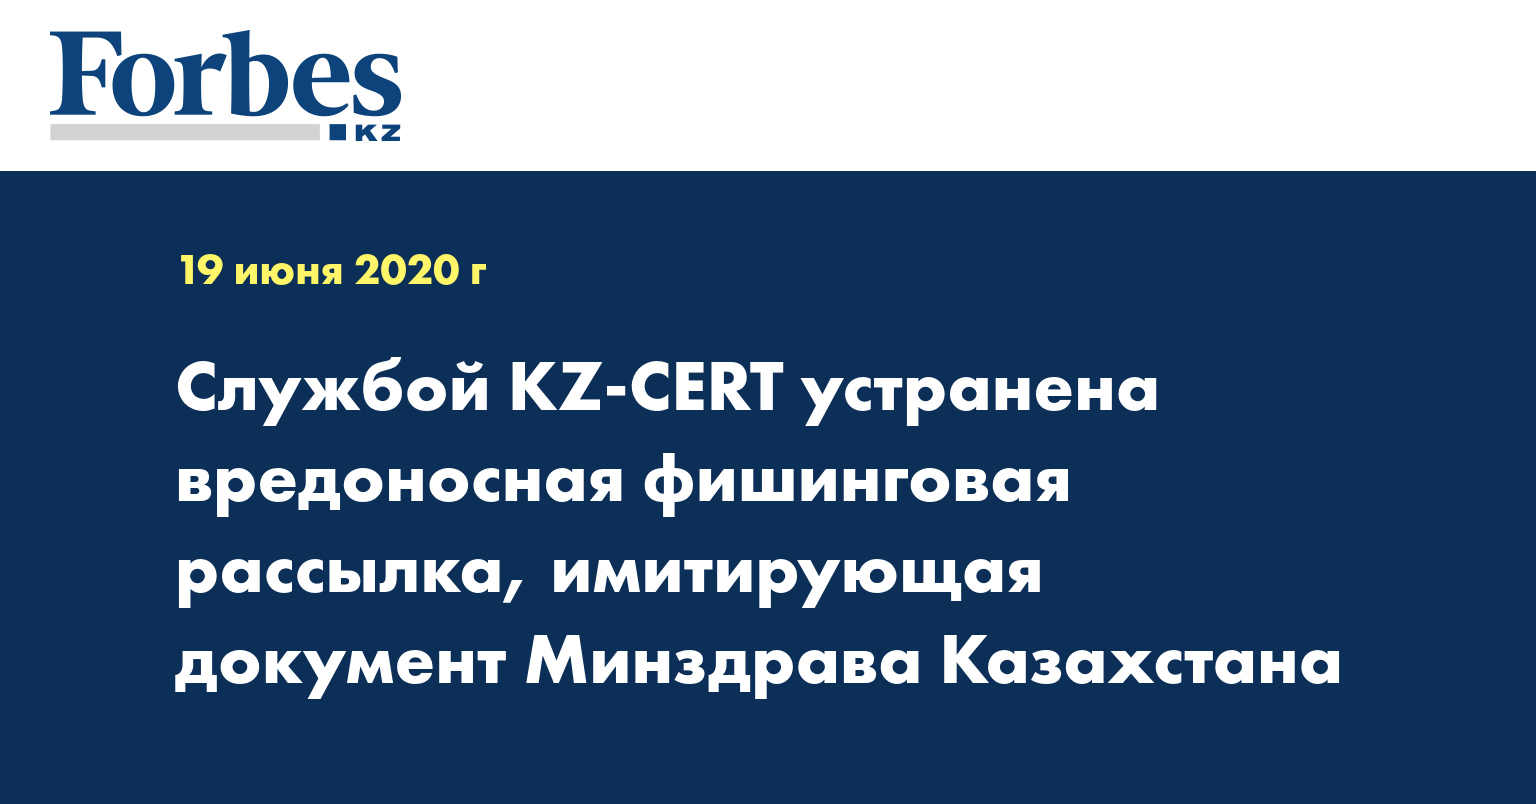 Службой KZ-CERT устранена вредоносная фишинговая рассылка, имитирующая документ Минздрава Казахстана